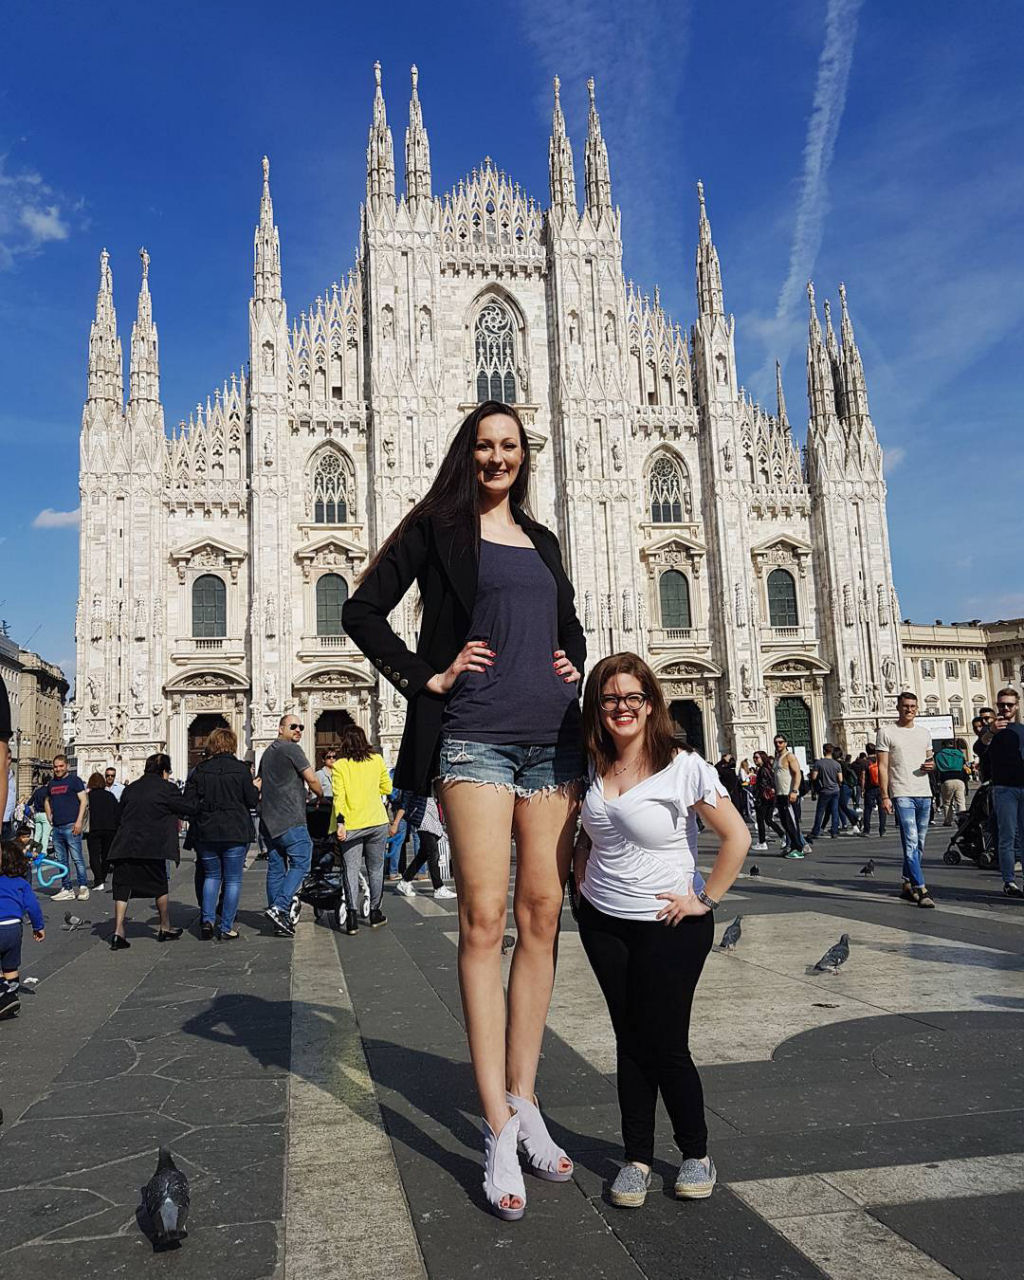 Ekaterina Lisina, a mulher com as pernas mais longas do mundo 06